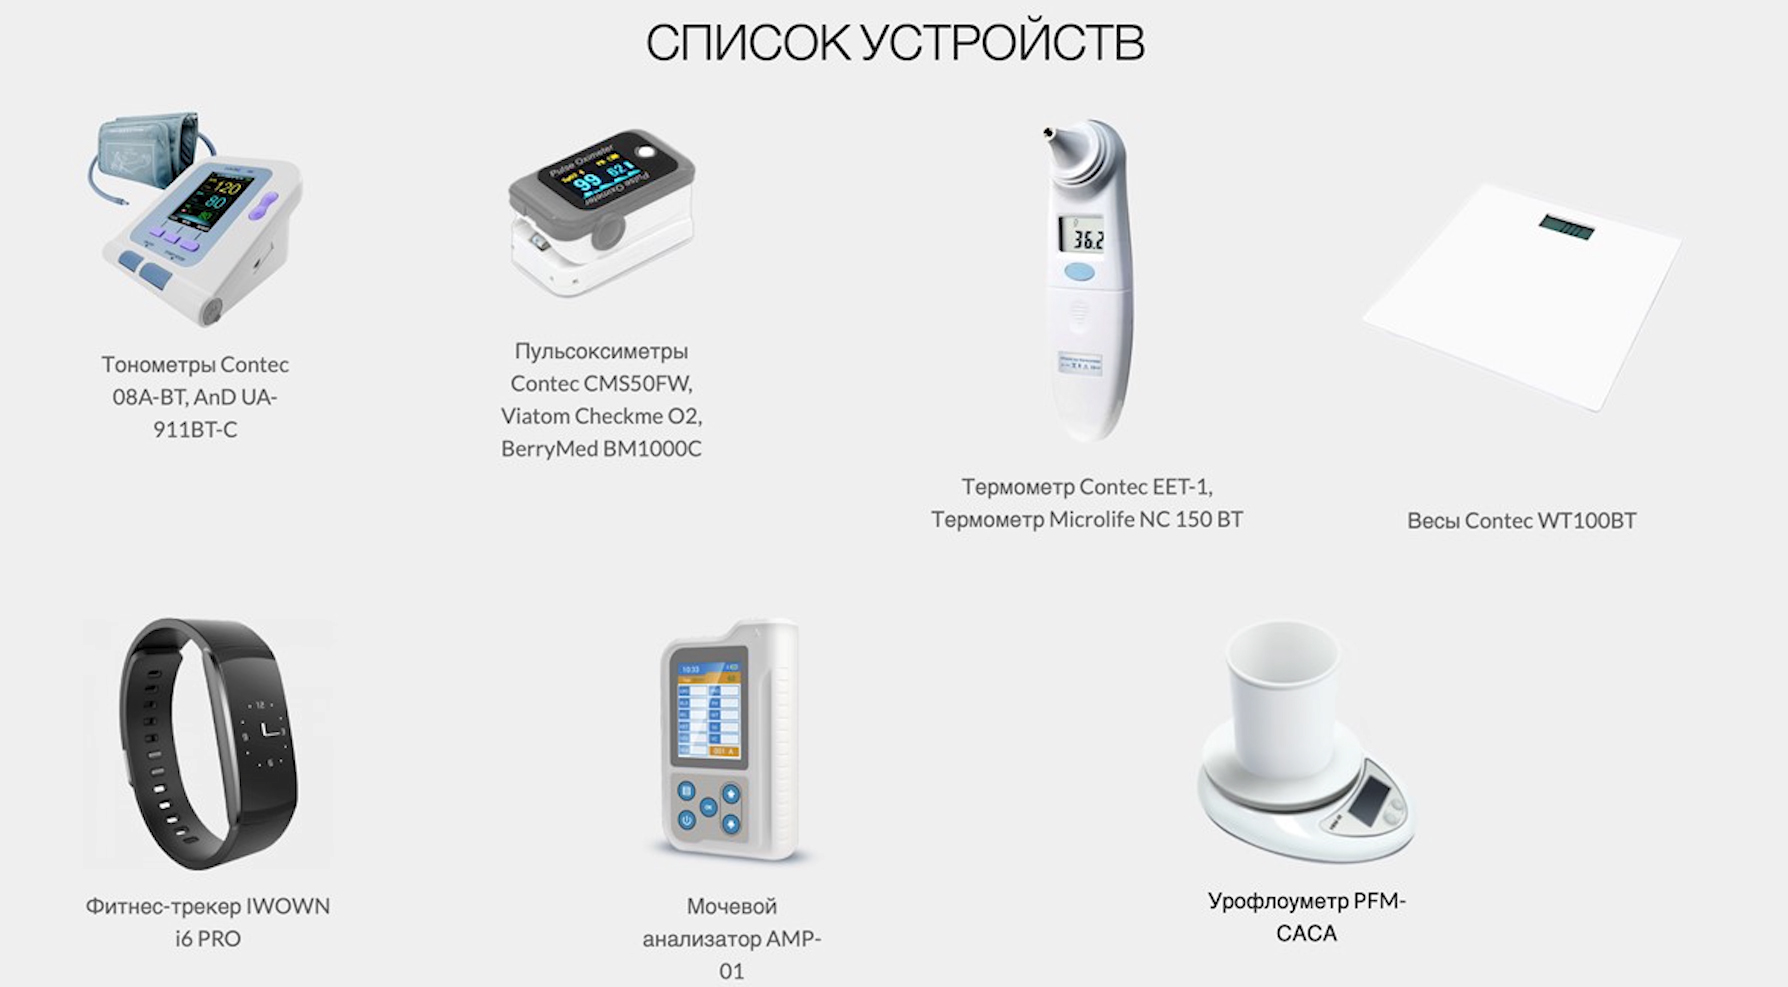  Медицинские устройства и гаджеты, которые подключены к российскому приложению, для дистанционного мониторинга пациентов